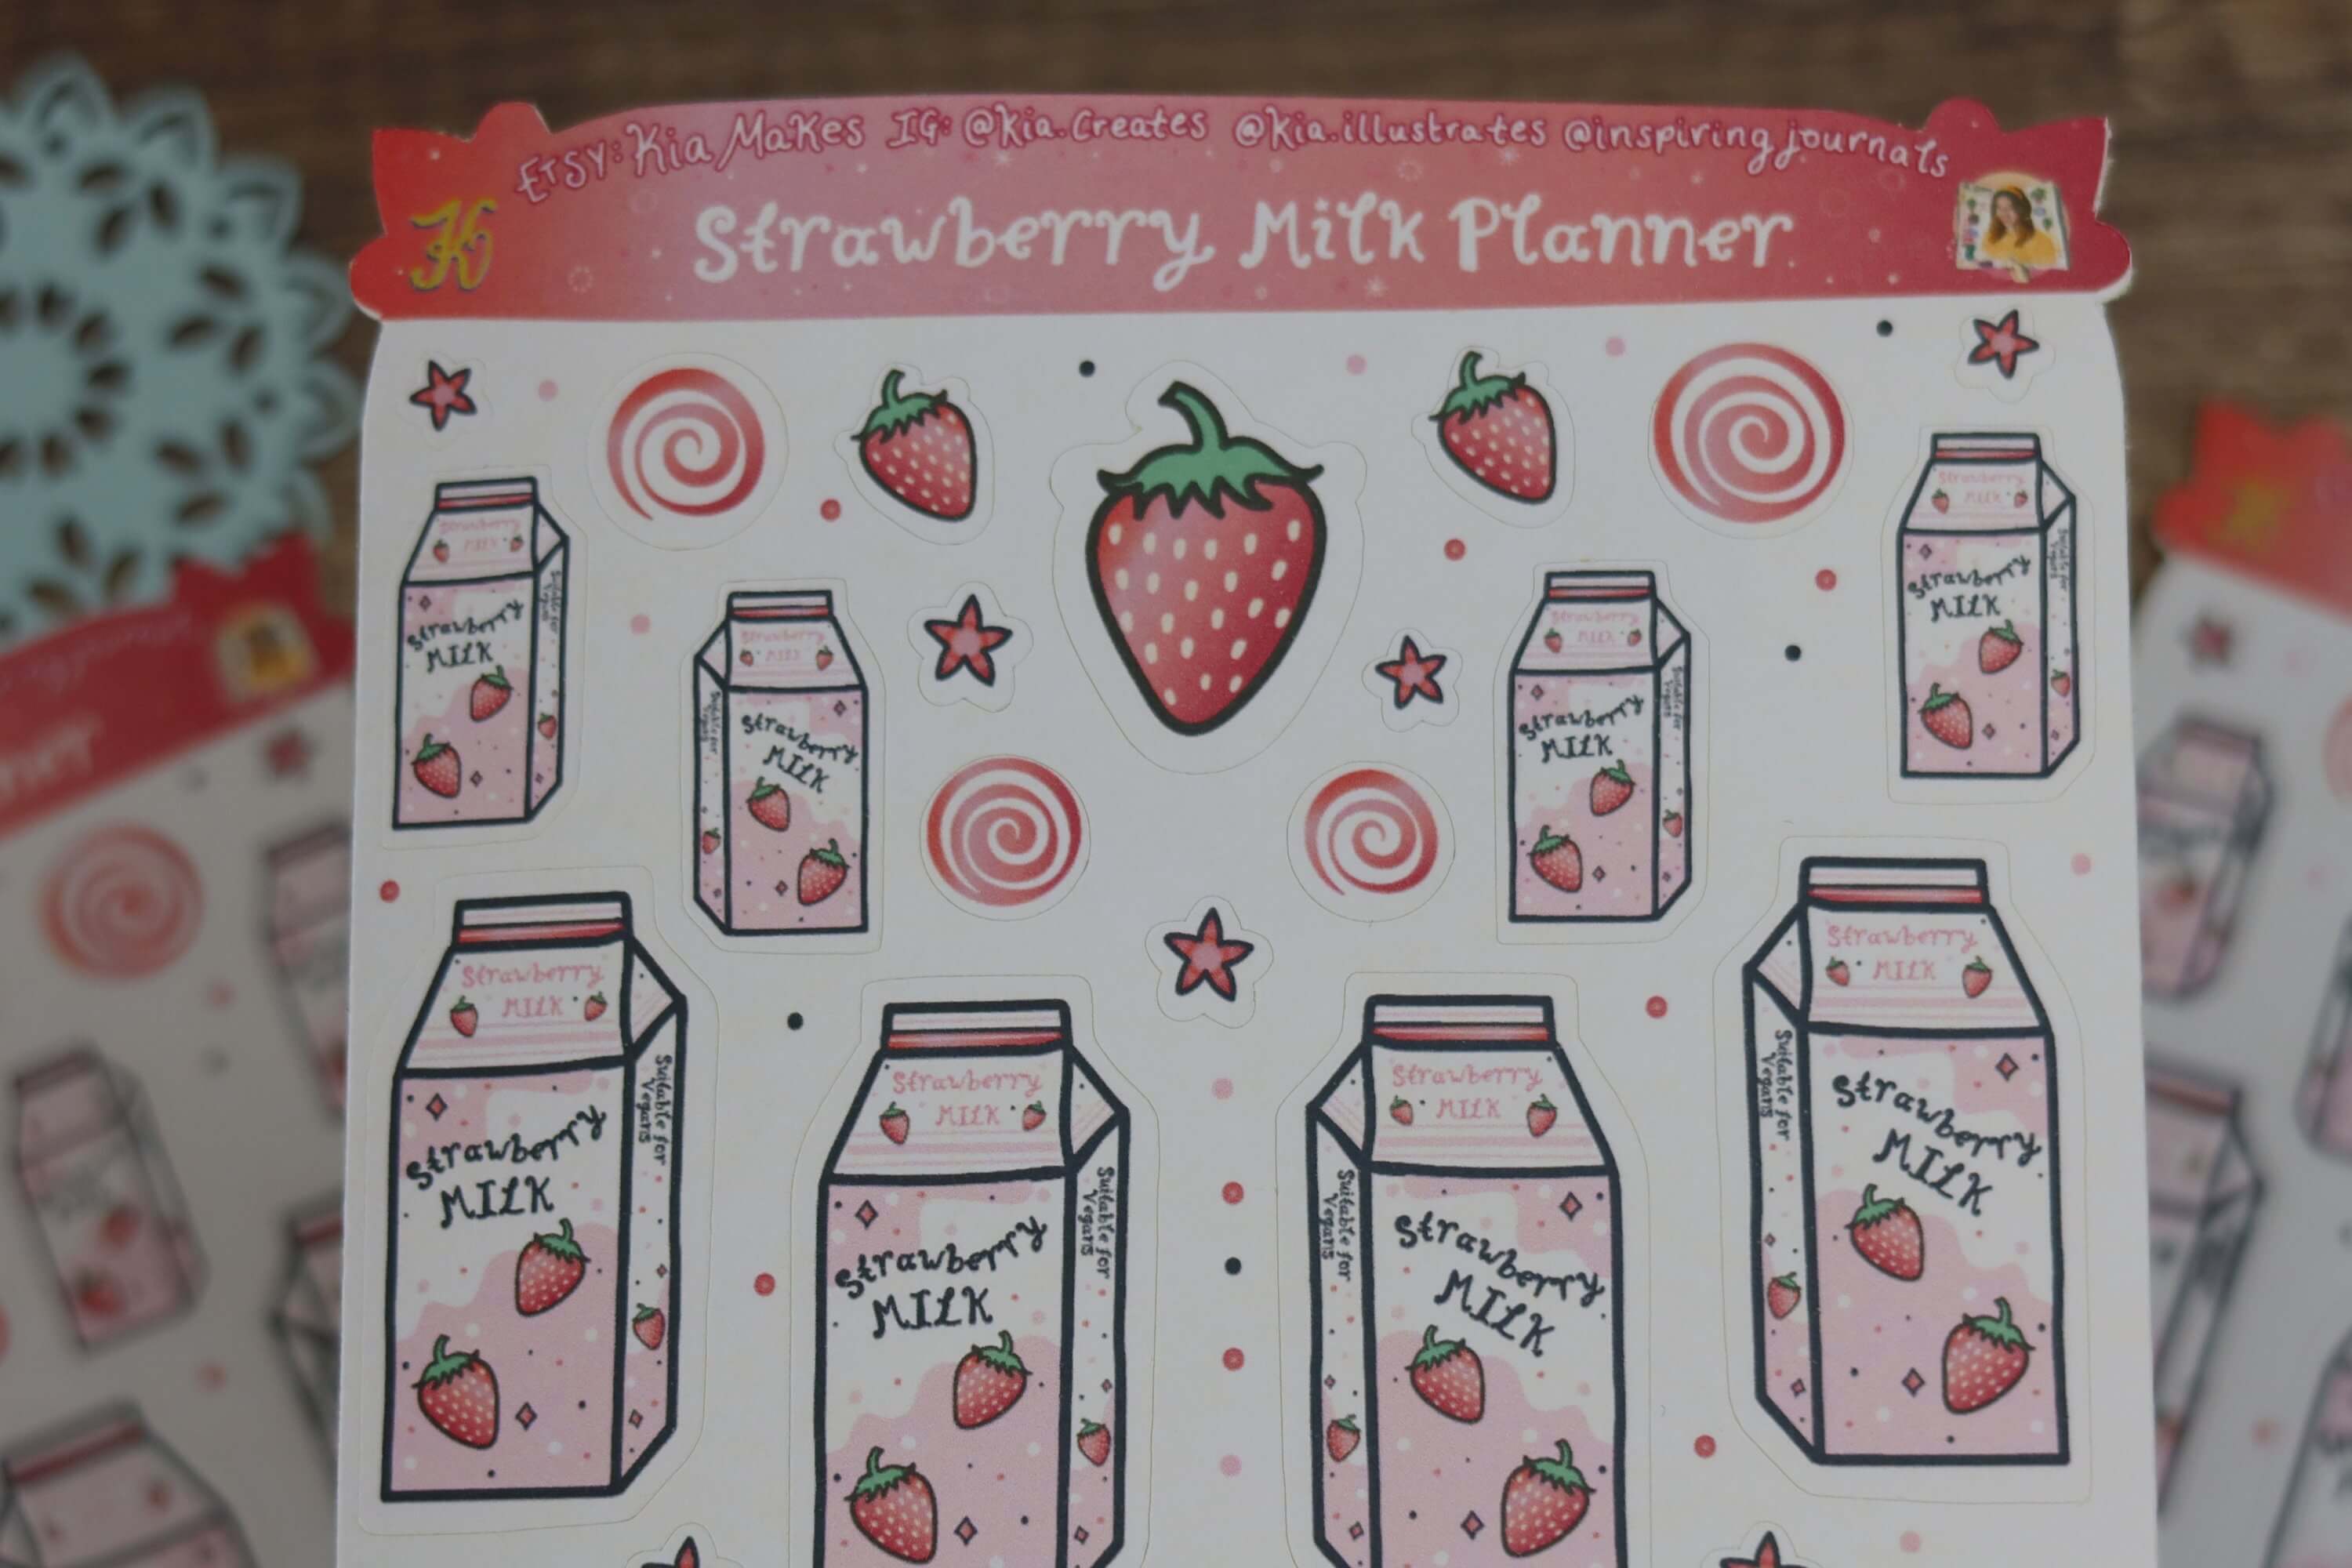 Strawberry milk planner stickers